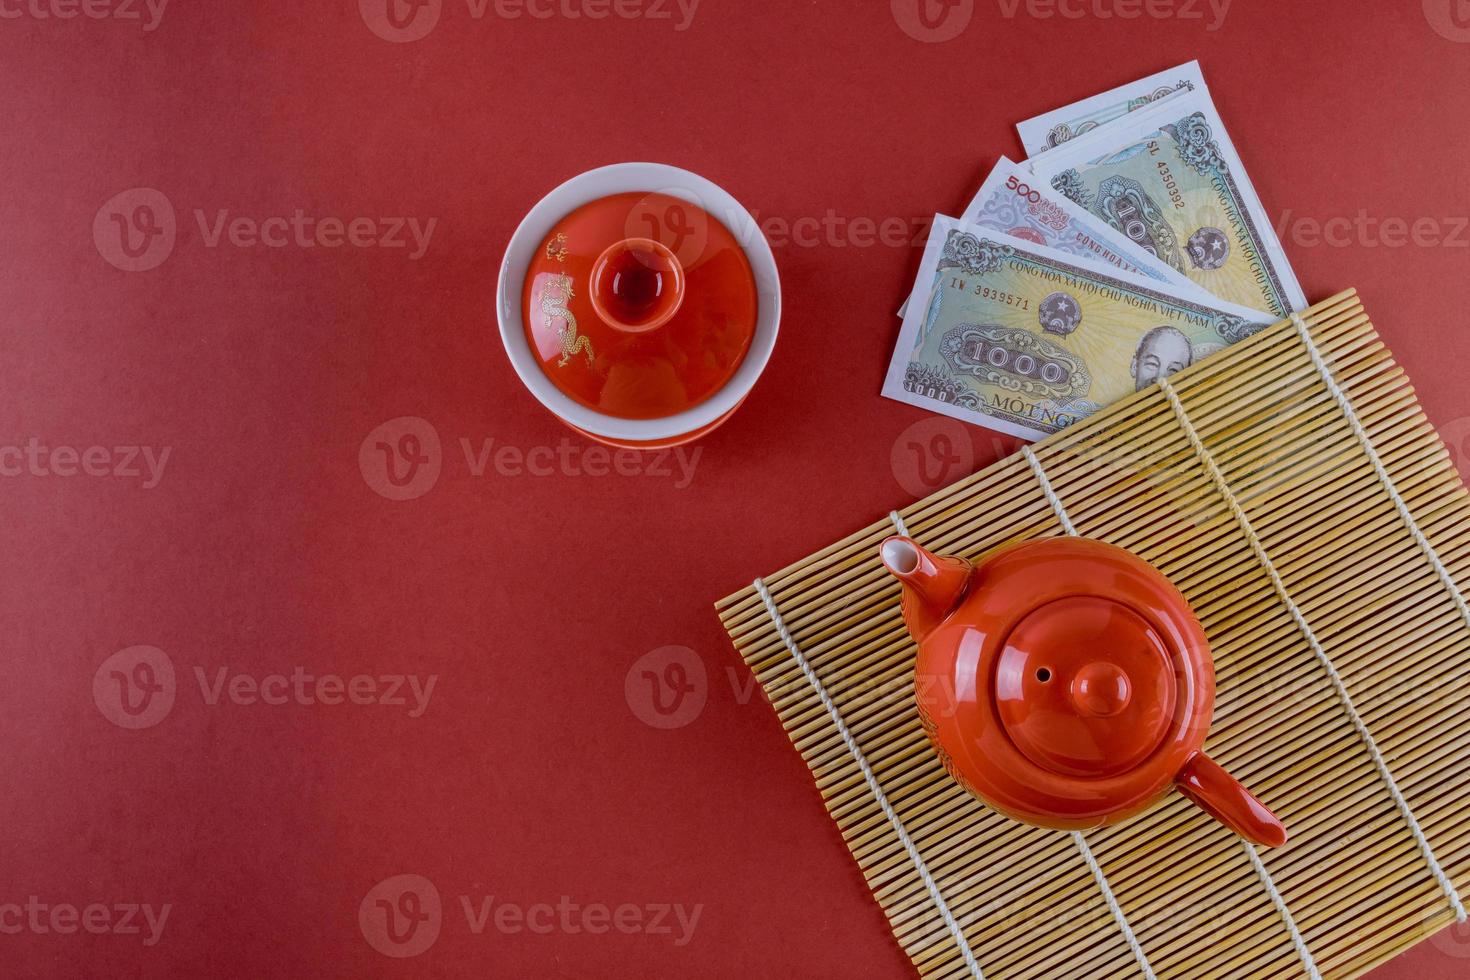 célébrer les décorations du festival asiatique le nouvel an vietnamien cérémonie festive thé avec de l'argent dong vietnamien sur fond rouge photo